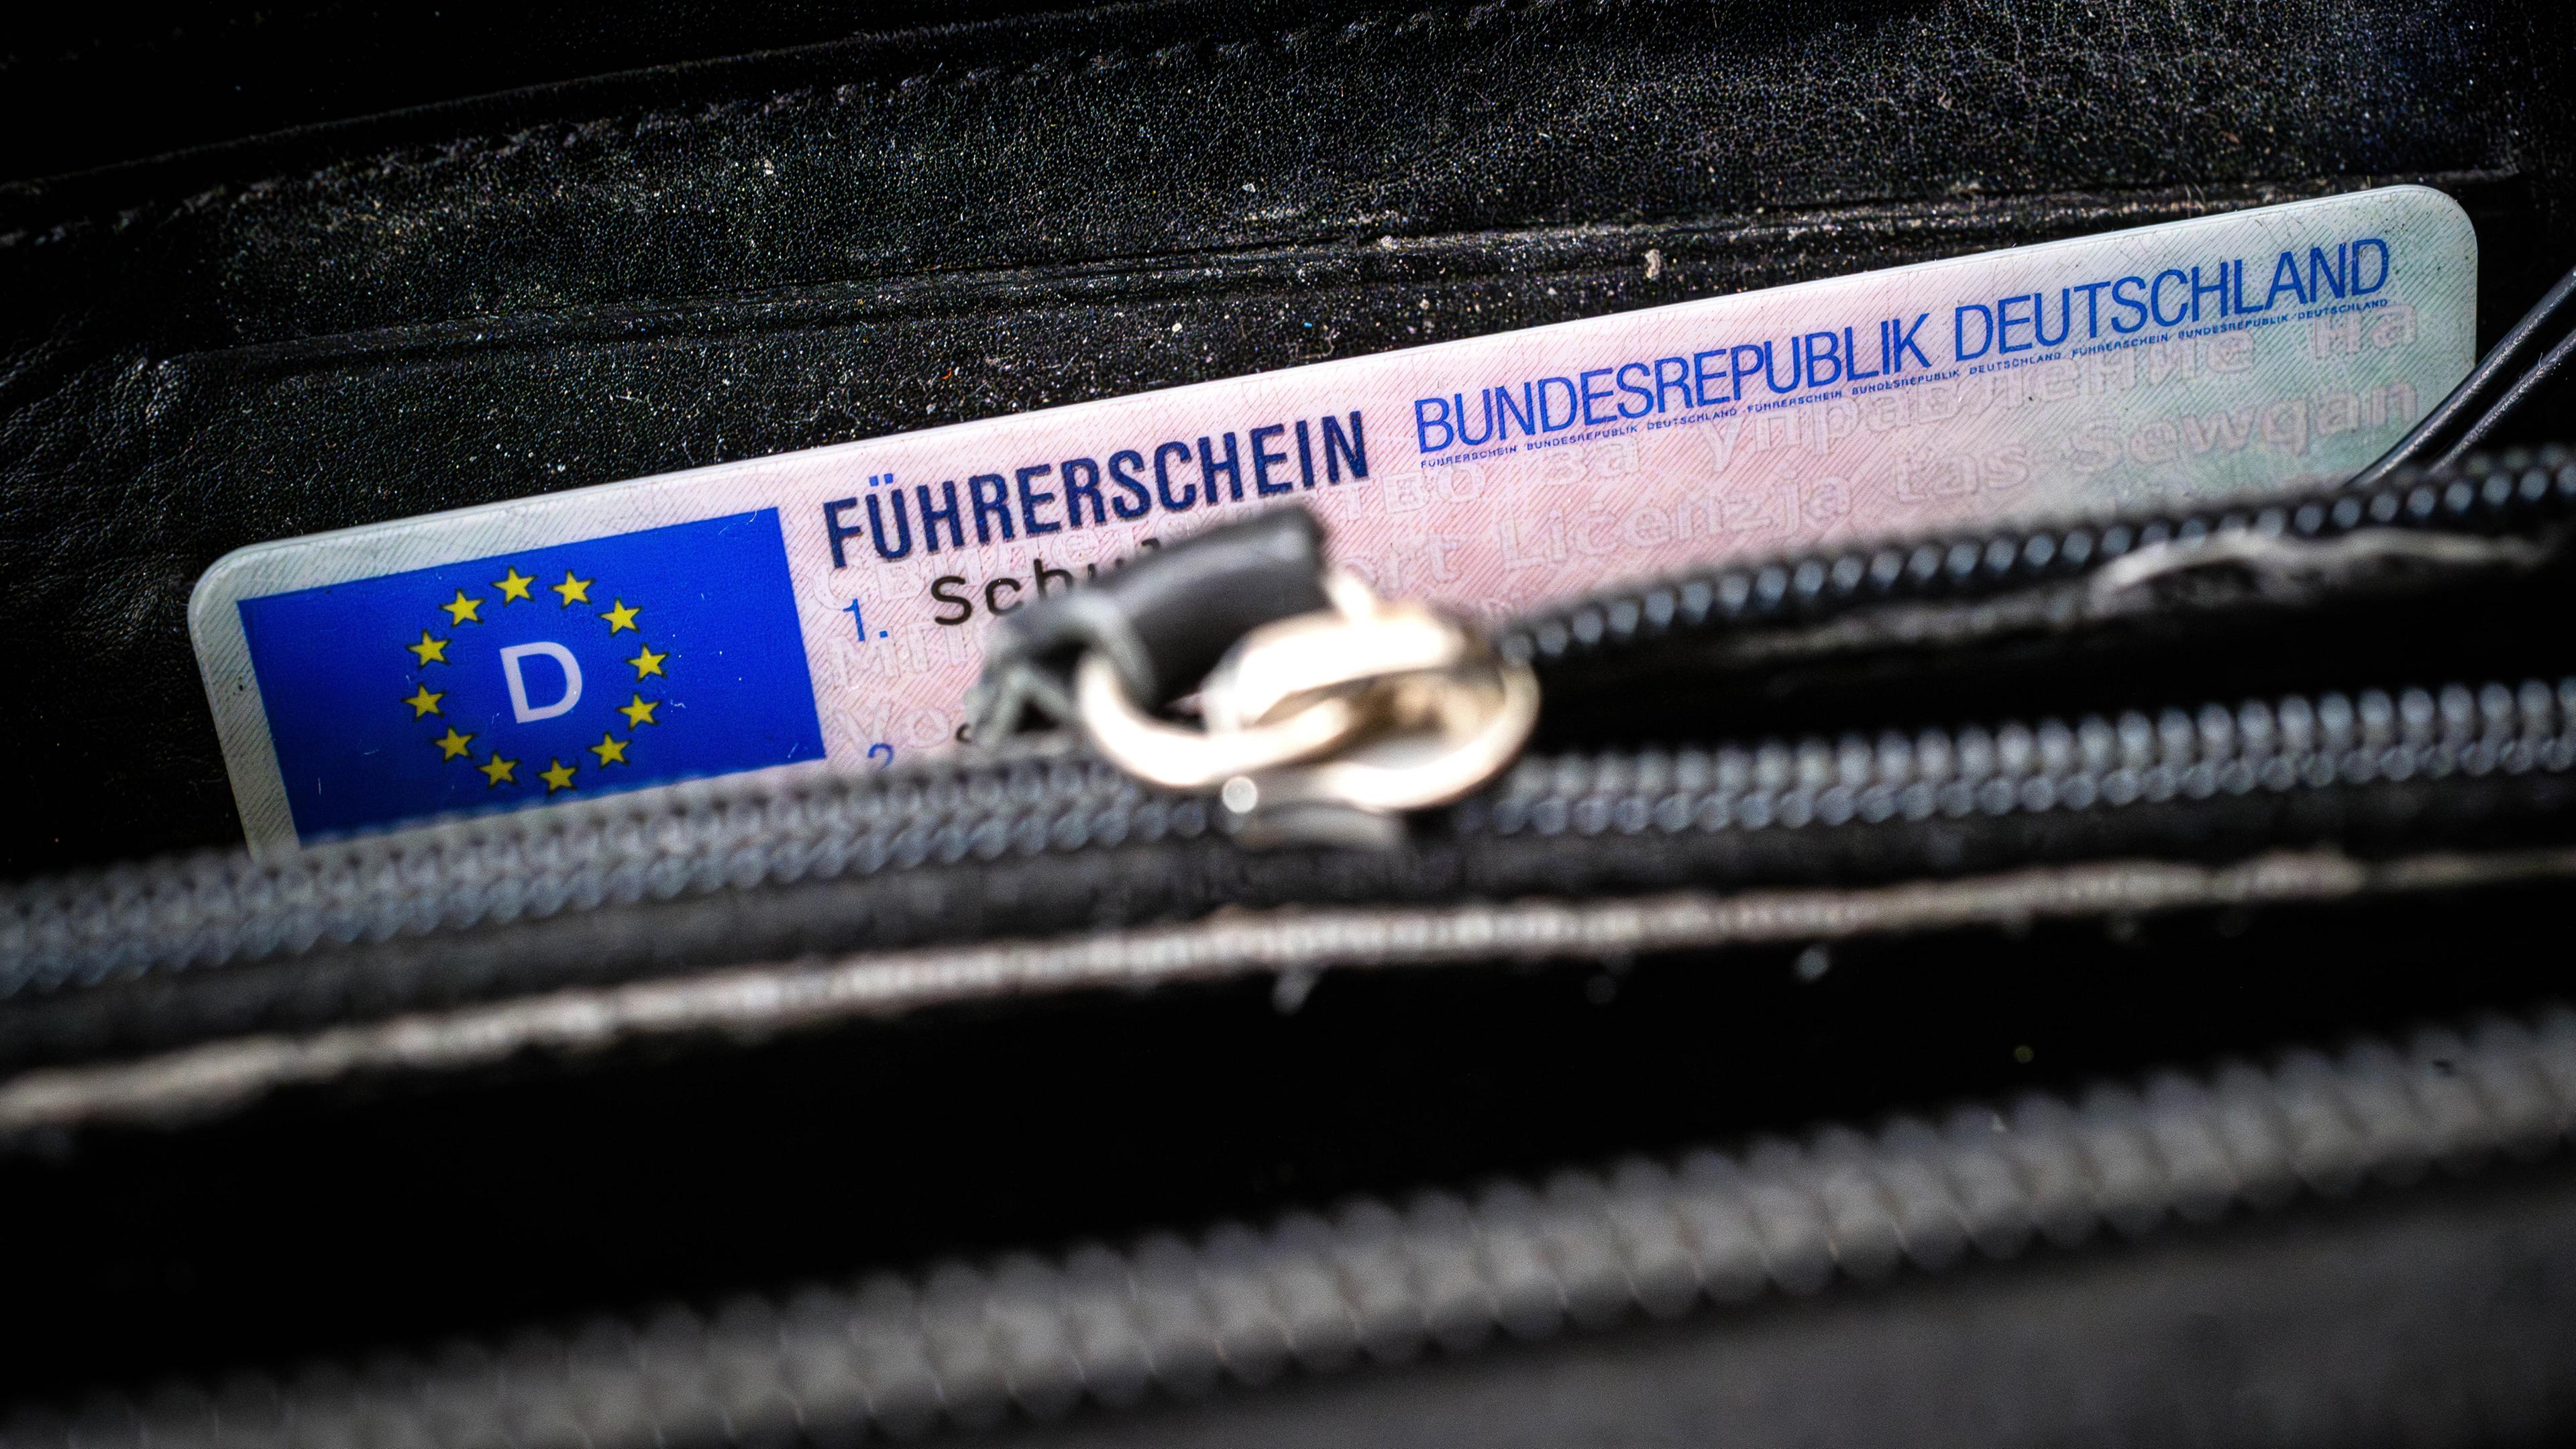 Ein Fürherschein der Bundesrepublik Deutschland lugt aus einer Brieftasche heraus.